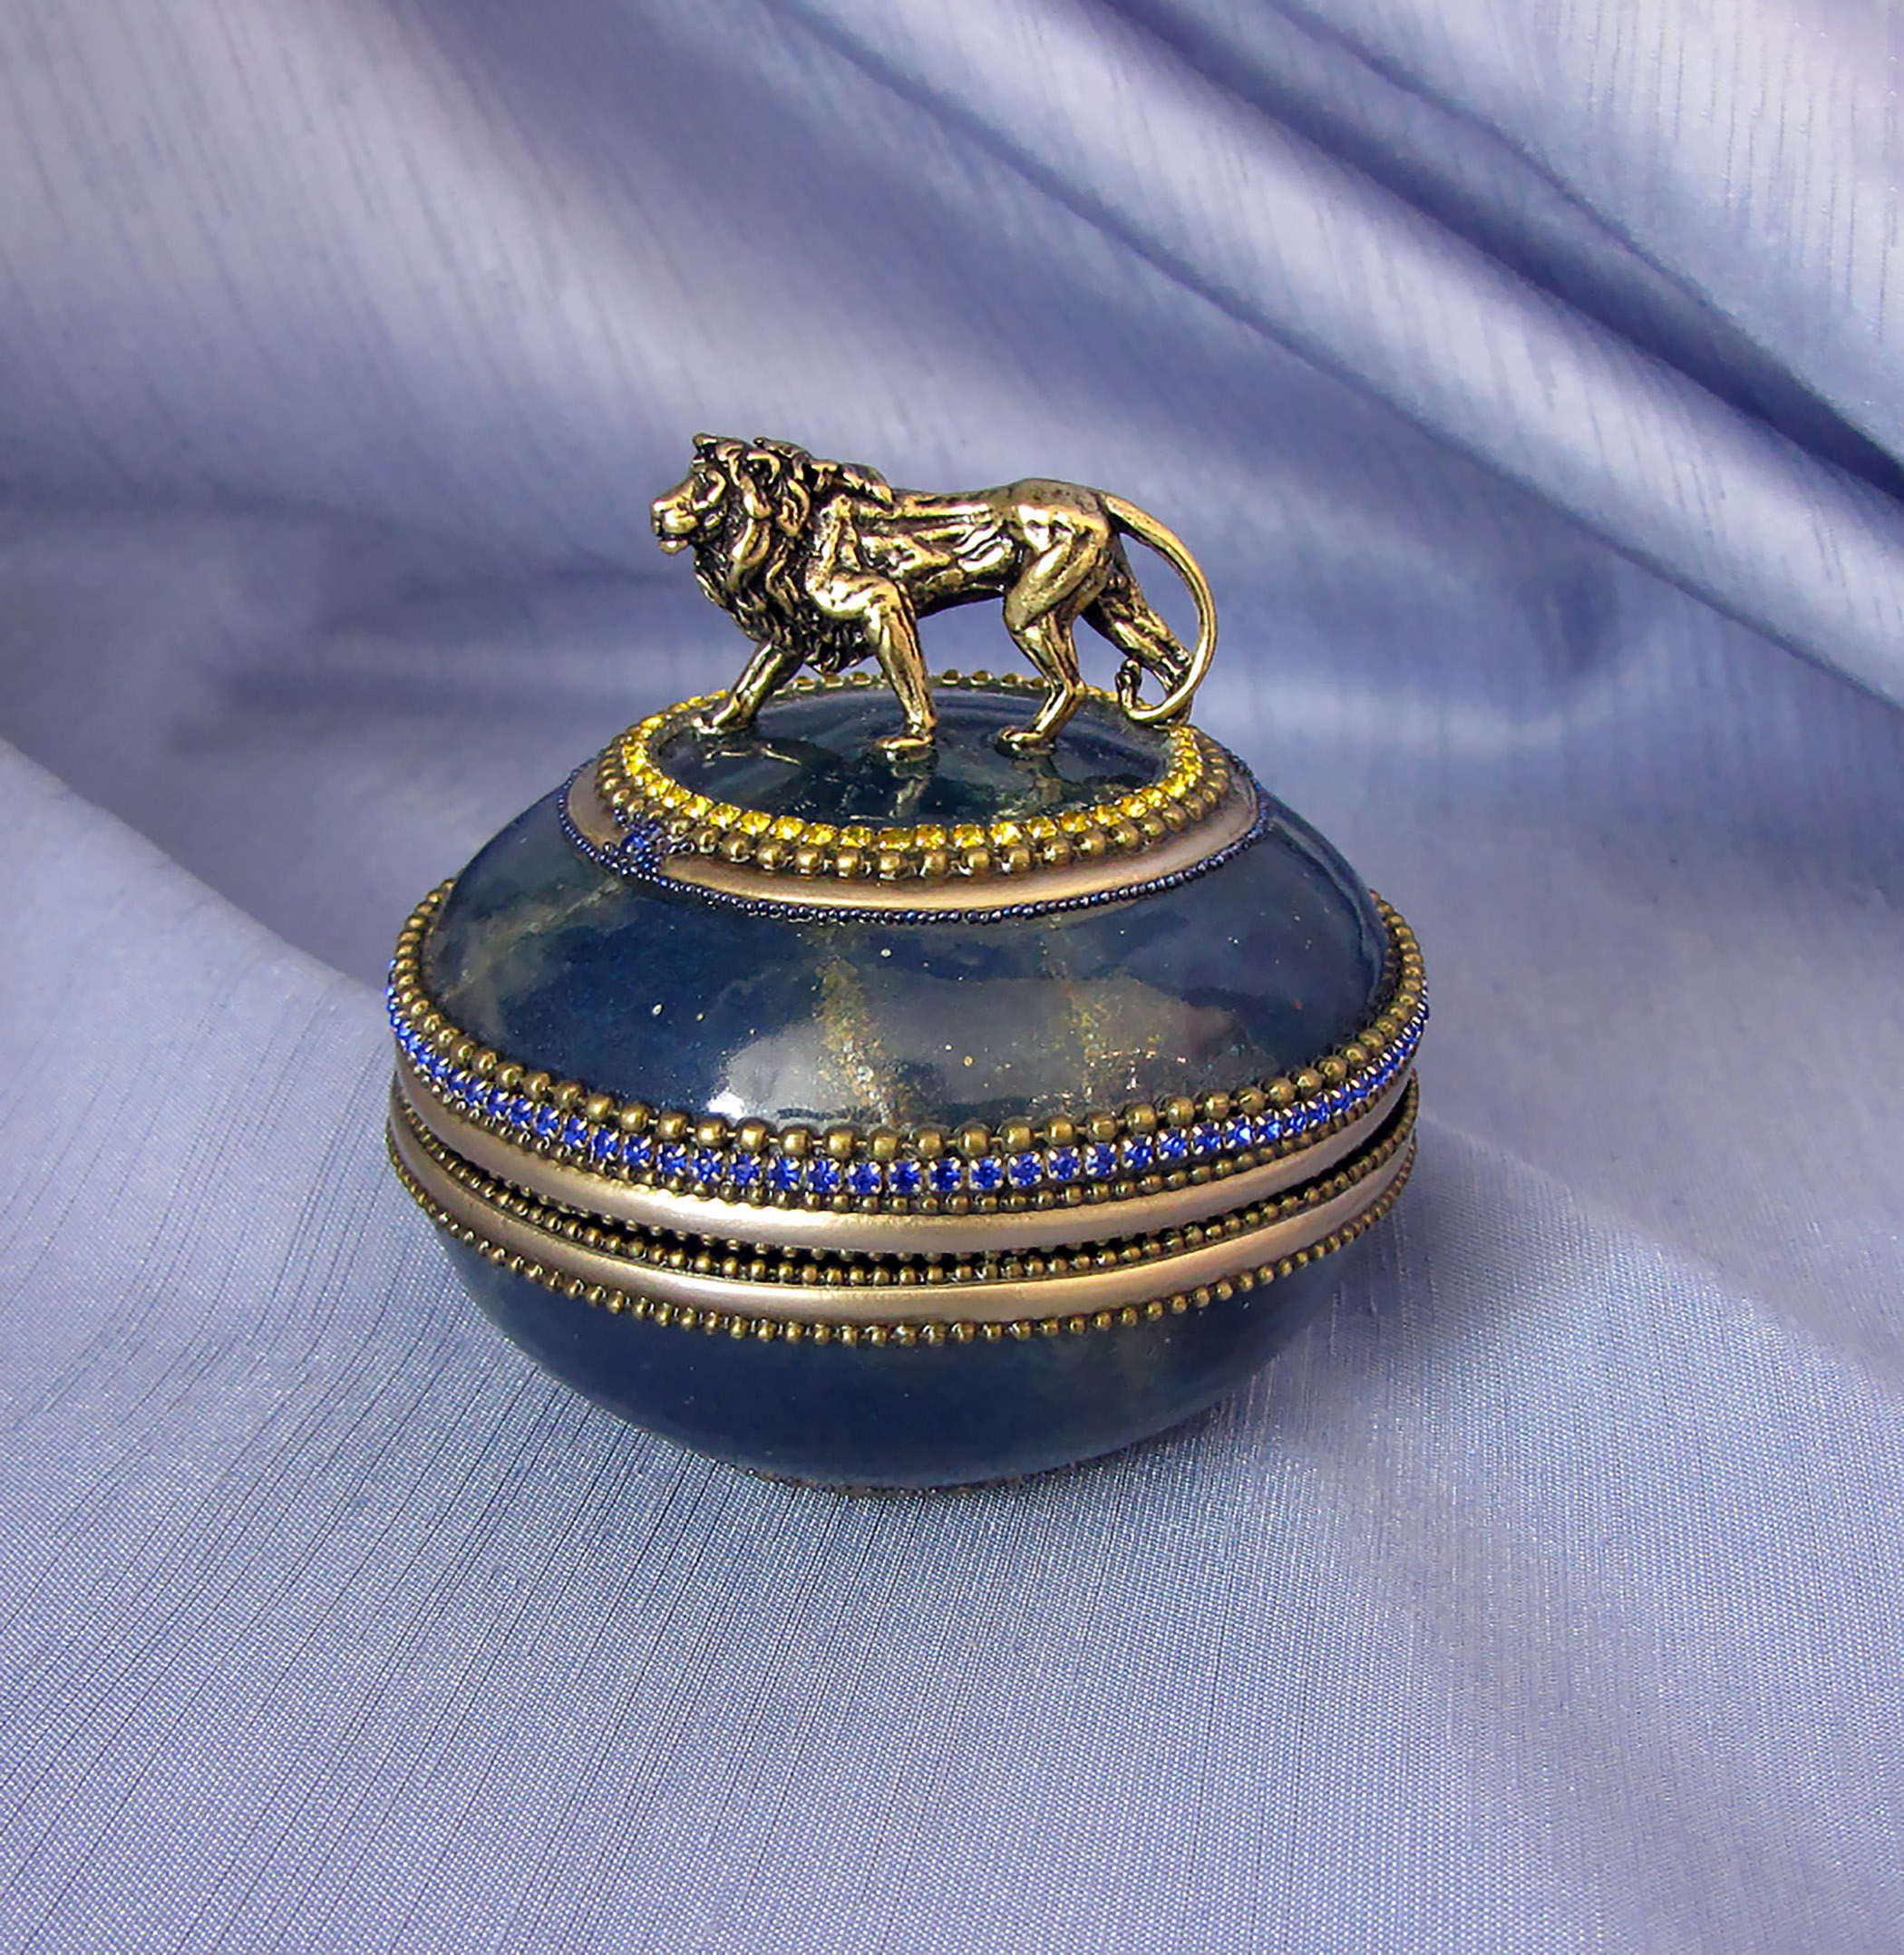 Indigo jewelry box, jewelry box with a lion